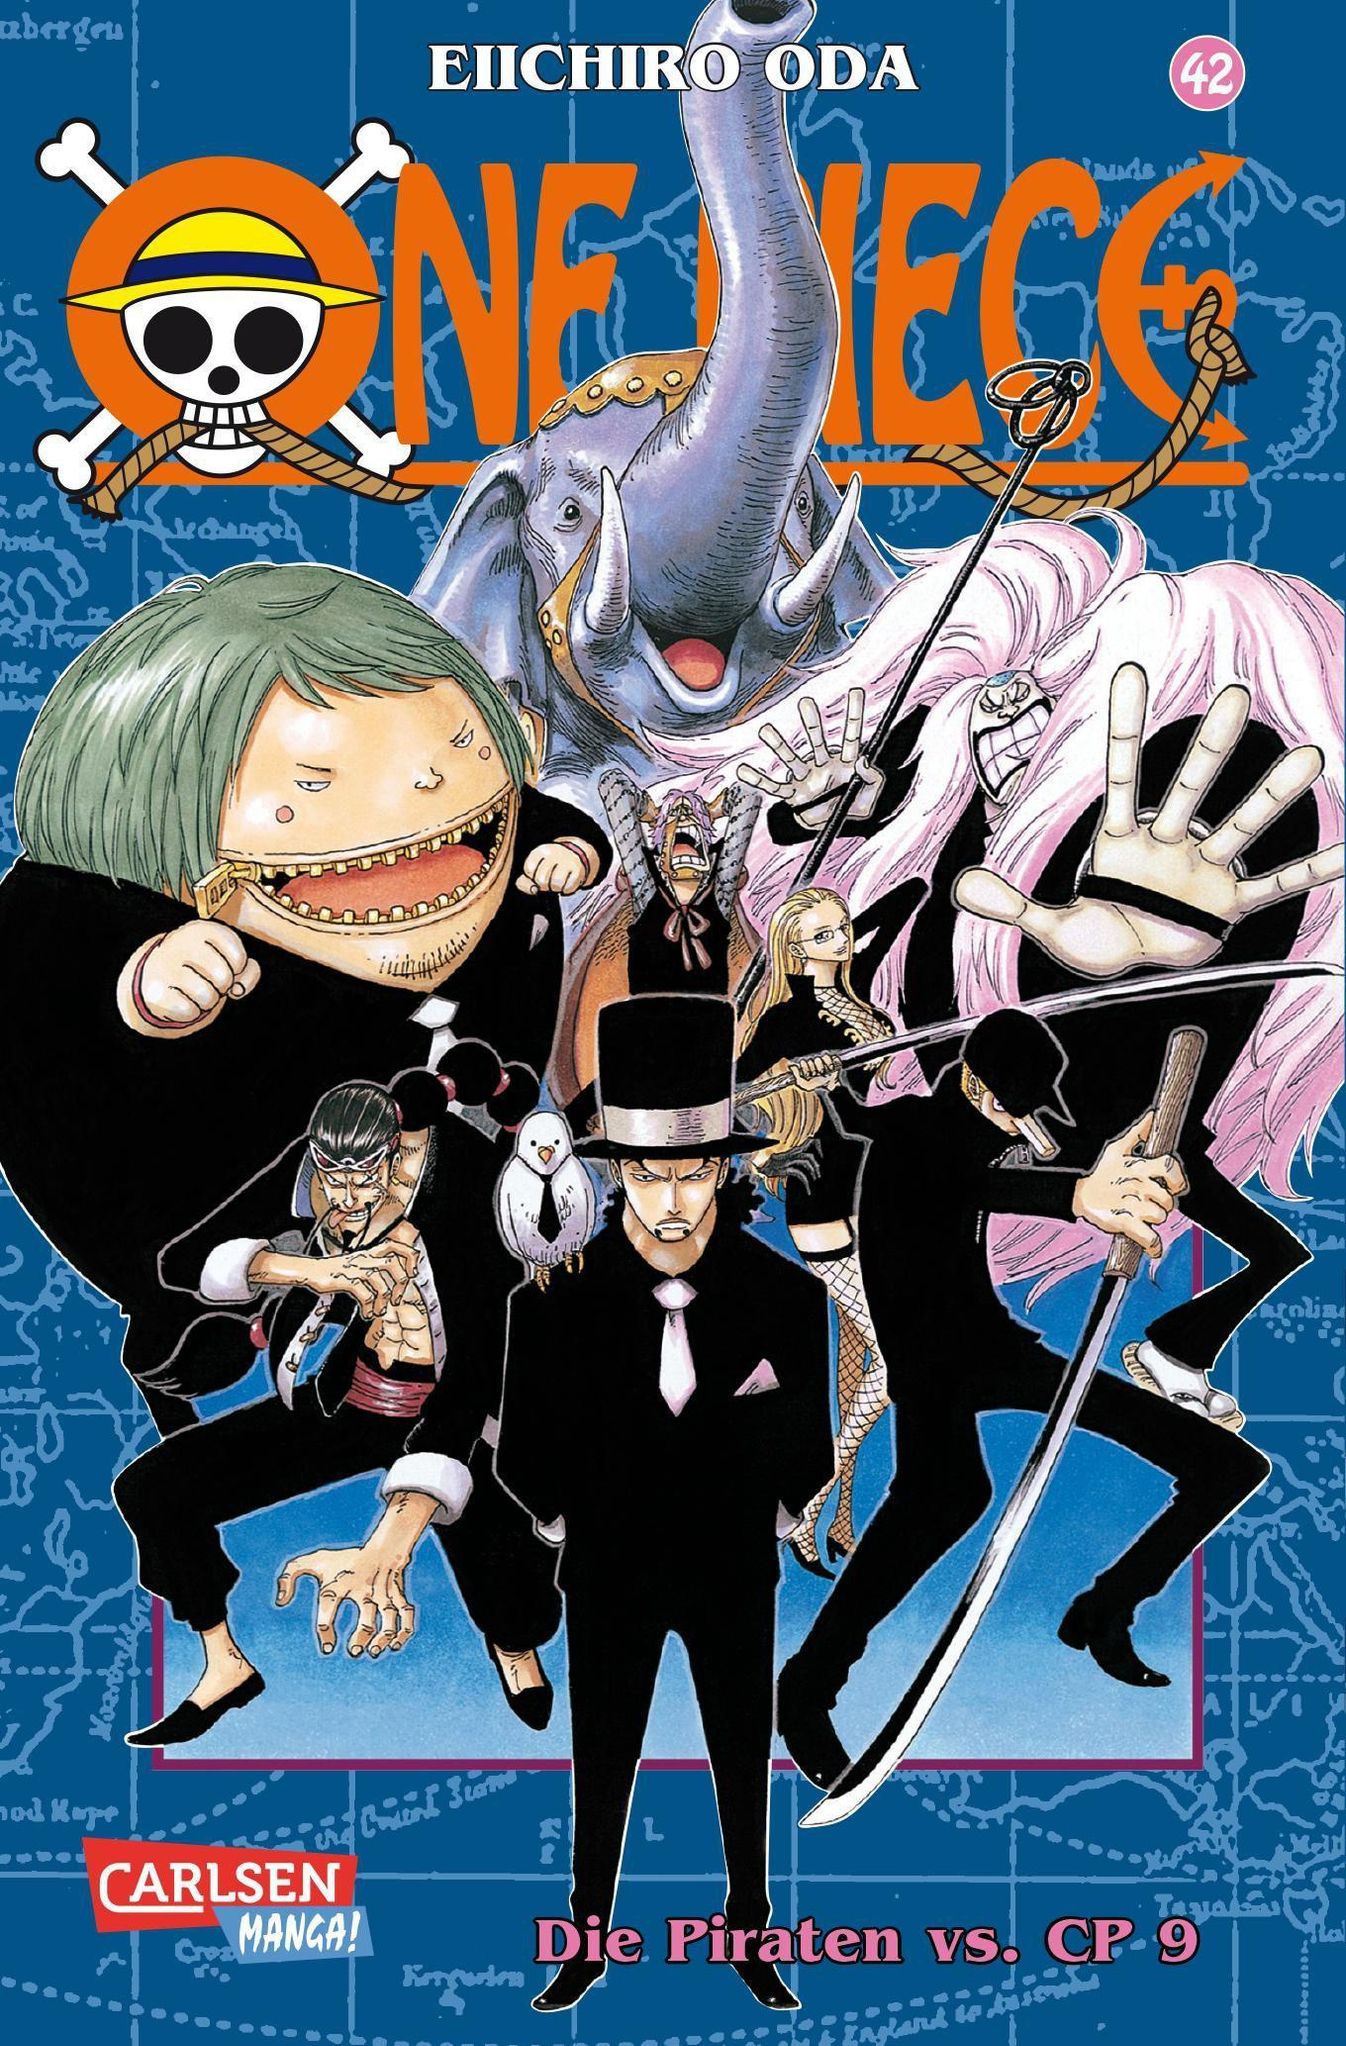 Kapitel 1080 - Der Legendäre Held - Seite 9 - One Piece Weekly Jump  Kapitel - Pirateboard - Das One Piece Forum